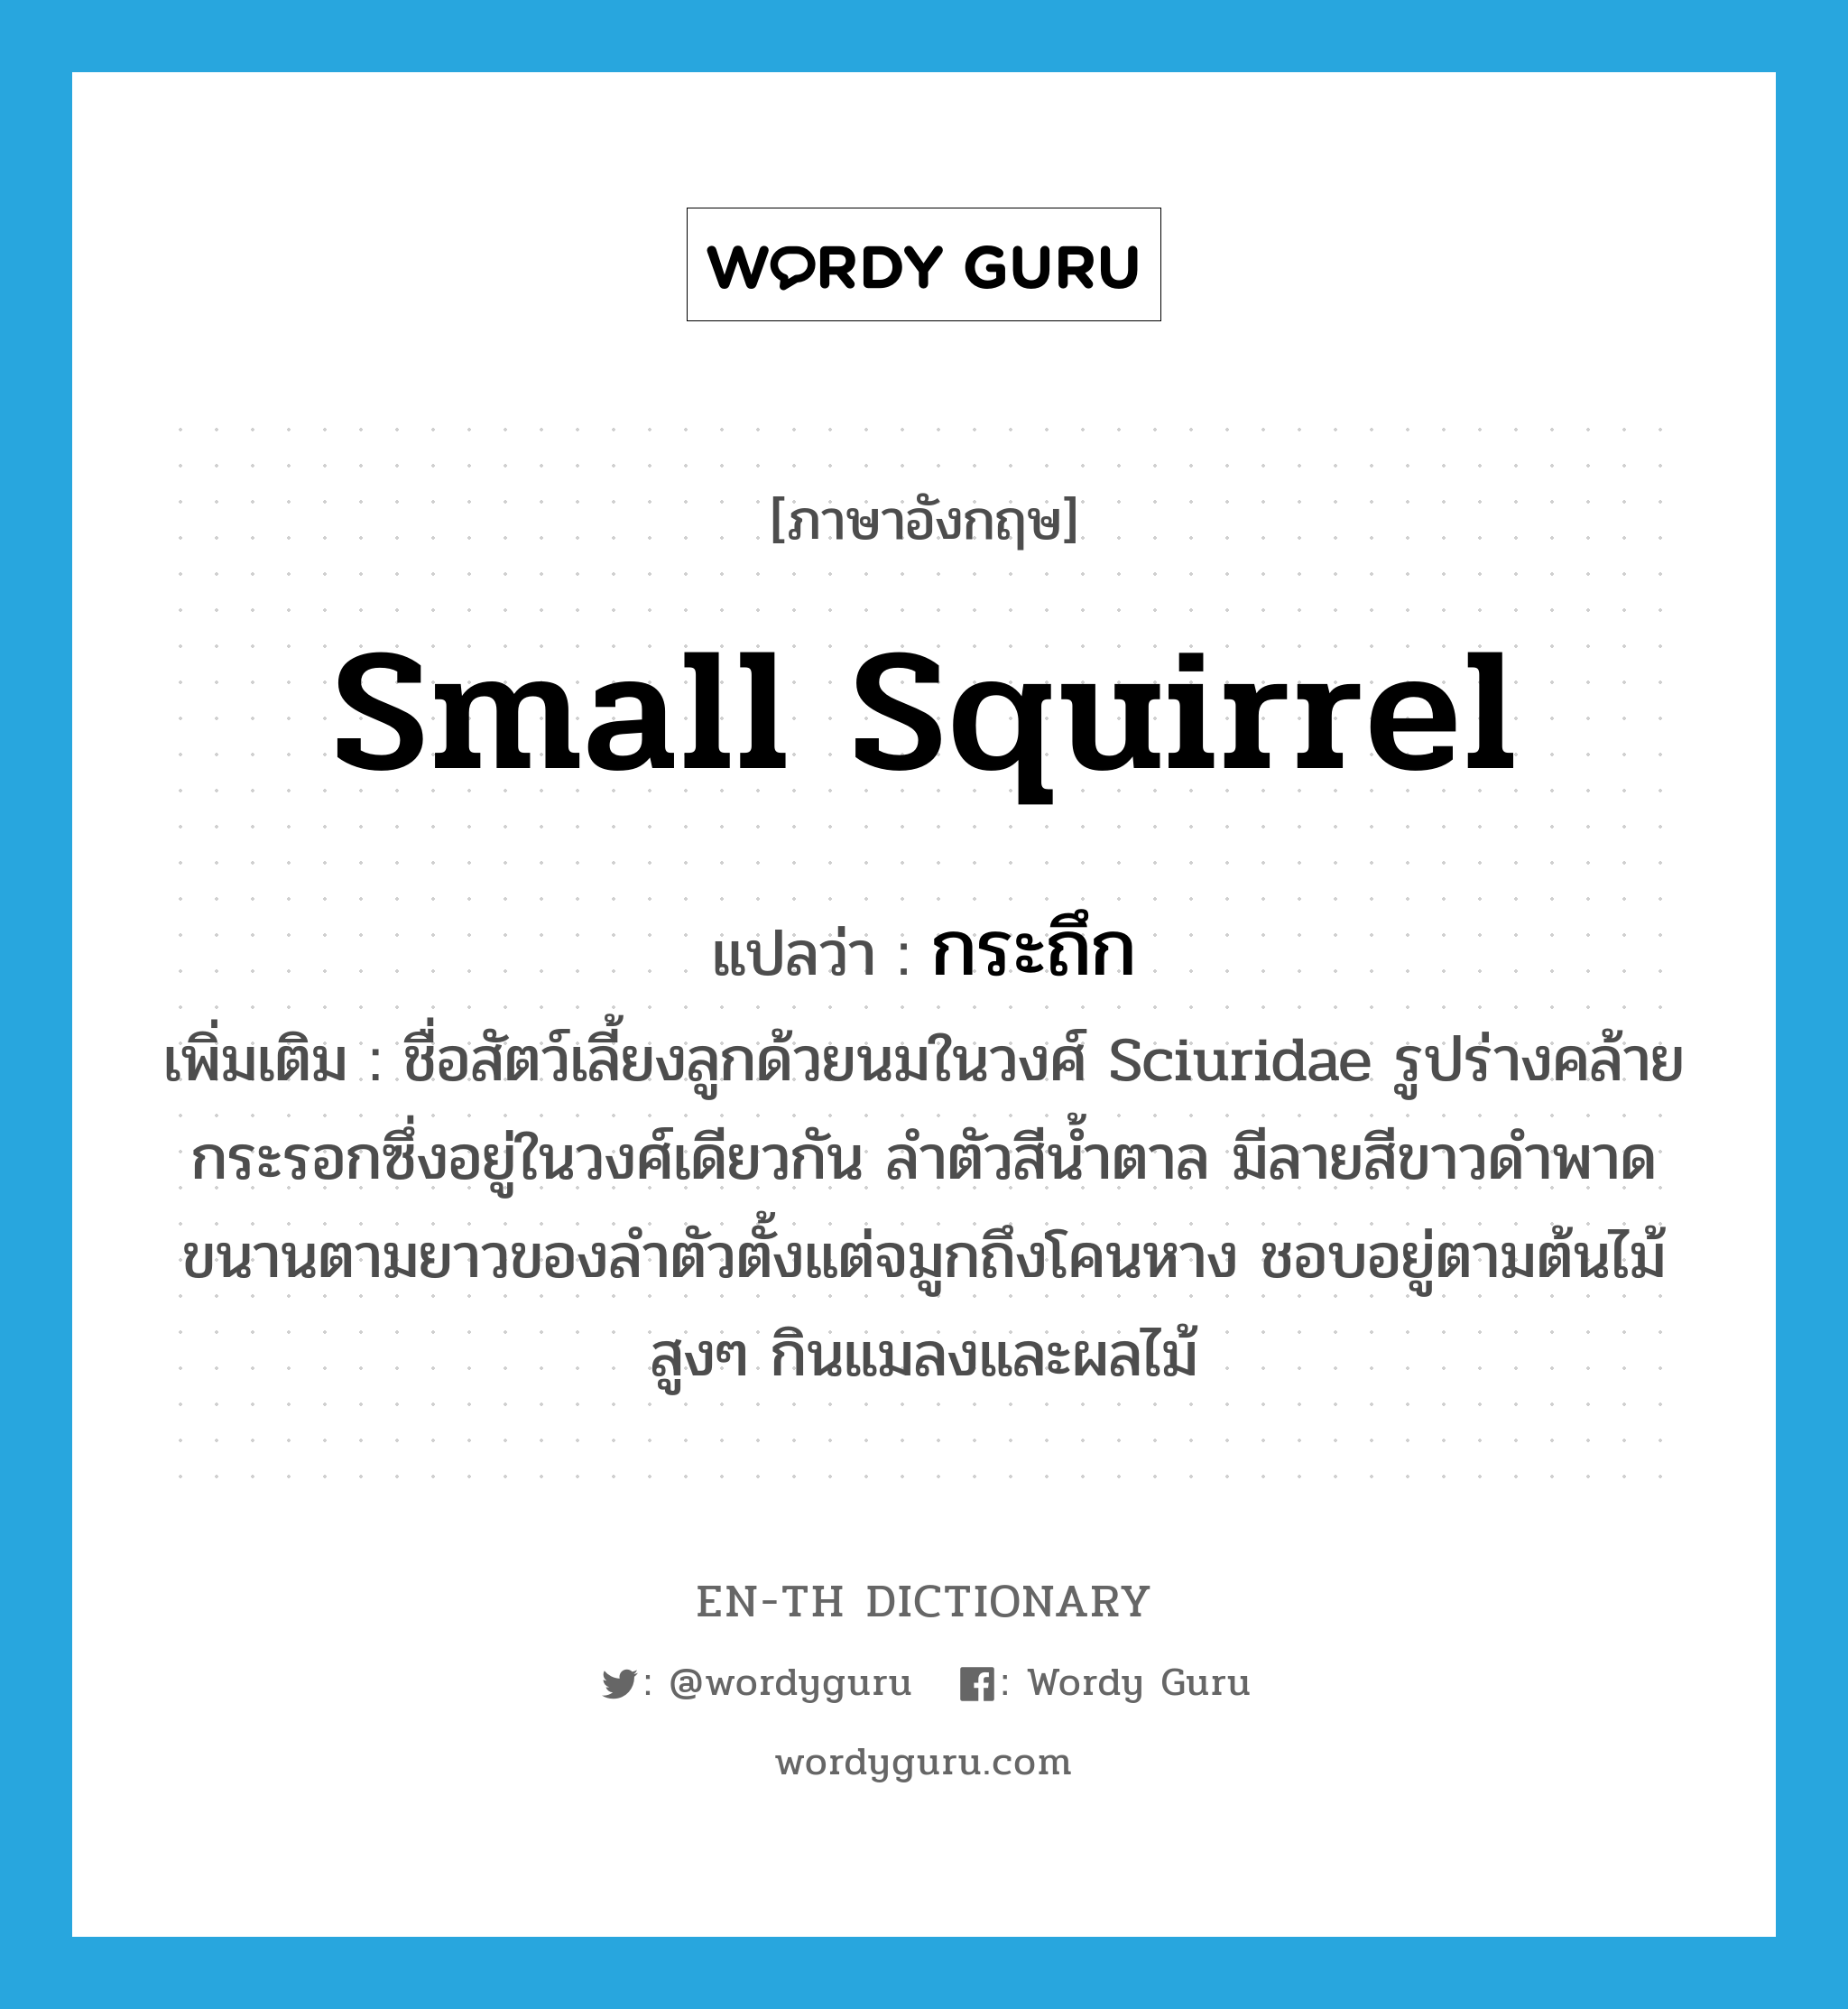 small squirrel แปลว่า?, คำศัพท์ภาษาอังกฤษ small squirrel แปลว่า กระถึก ประเภท N เพิ่มเติม ชื่อสัตว์เลี้ยงลูกด้วยนมในวงศ์ Sciuridae รูปร่างคล้ายกระรอกซึ่งอยู่ในวงศ์เดียวกัน ลำตัวสีน้ำตาล มีลายสีขาวดำพาดขนานตามยาวของลำตัวตั้งแต่จมูกถึงโคนหาง ชอบอยู่ตามต้นไม้สูงๆ กินแมลงและผลไม้ หมวด N